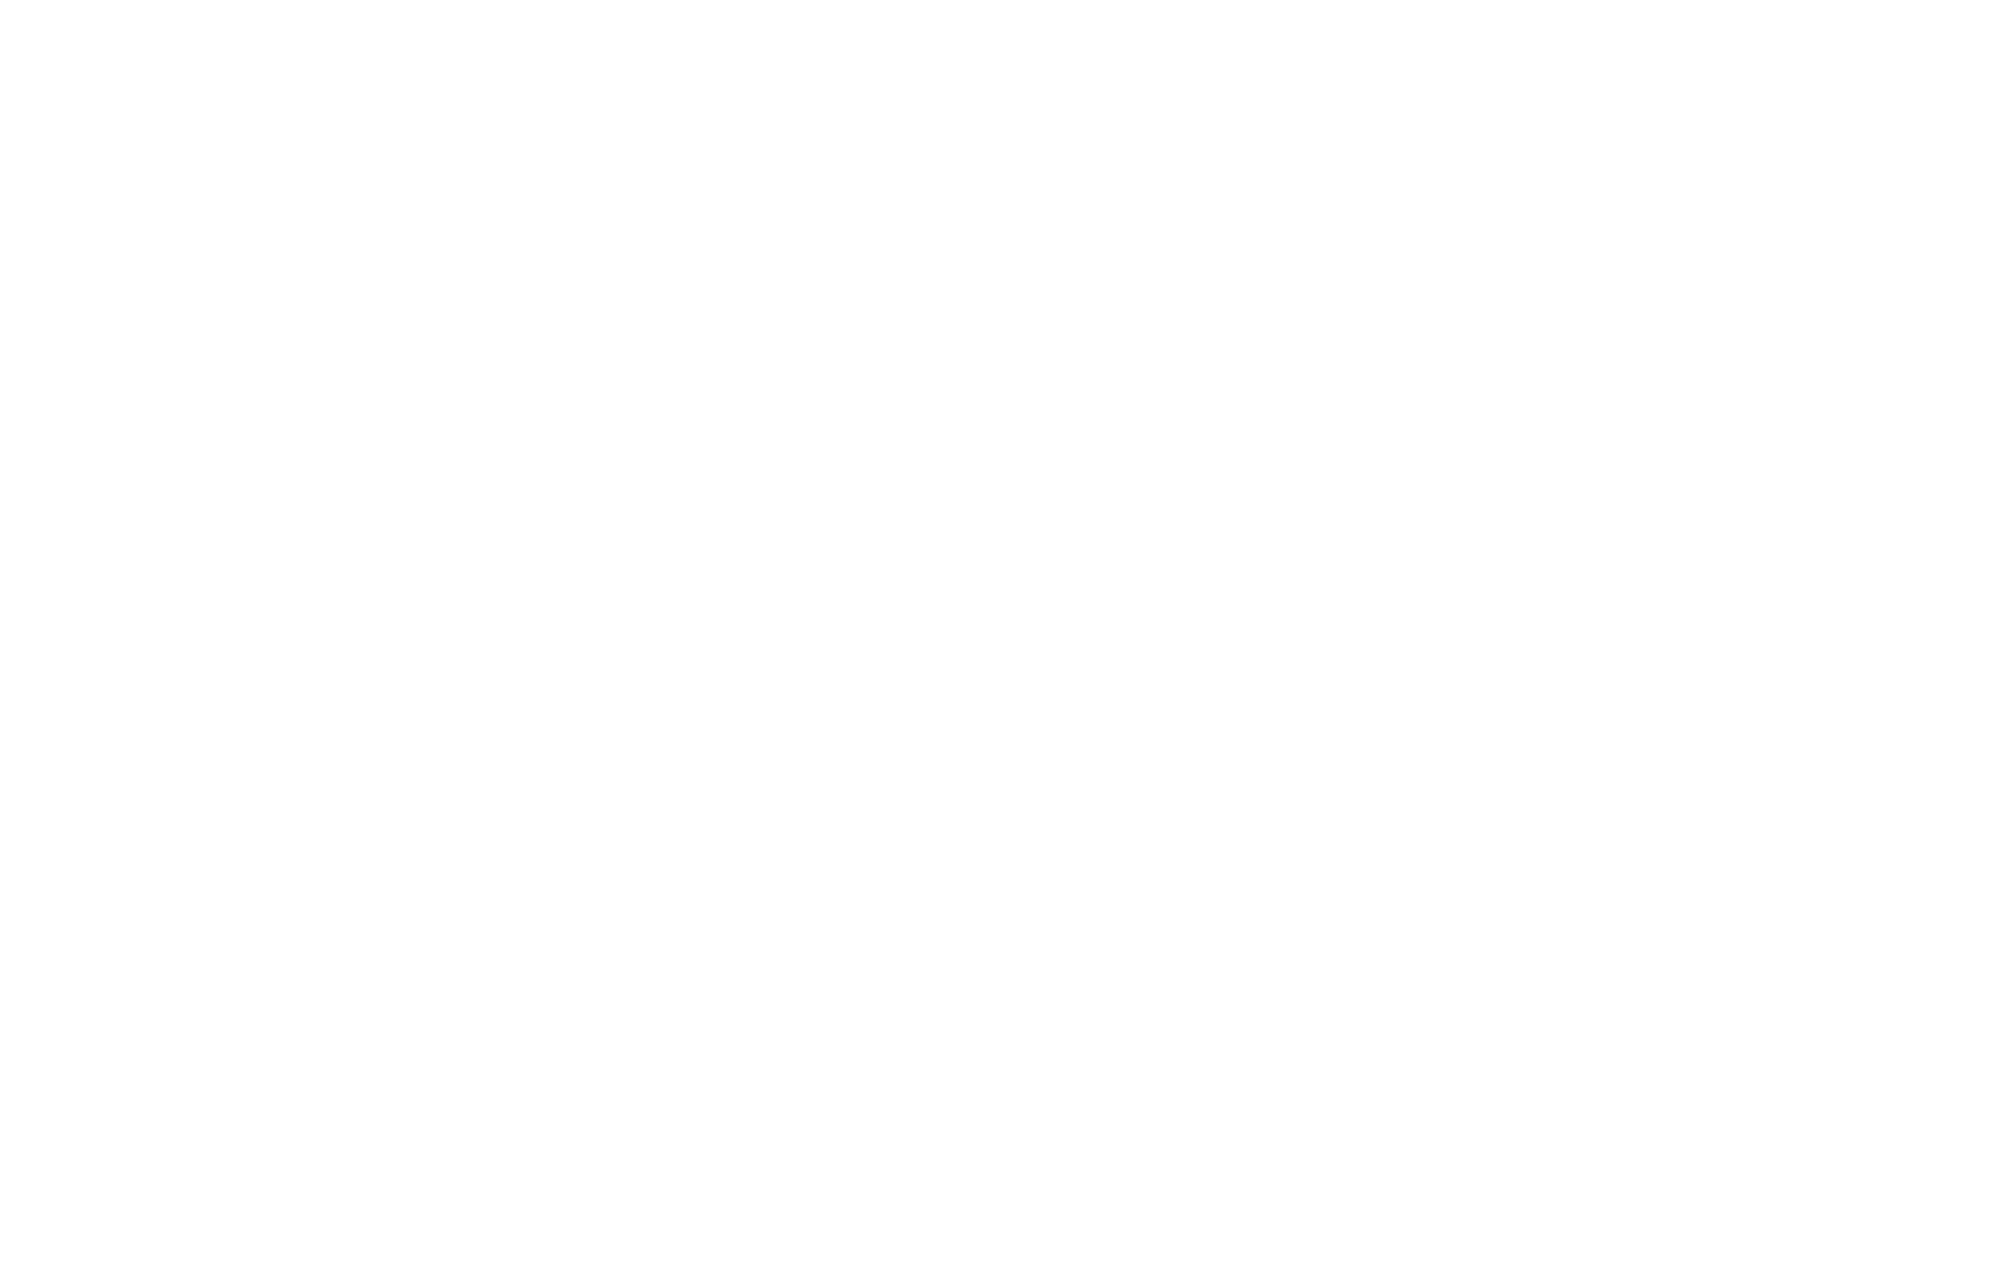 Derby Village Mont Blanc